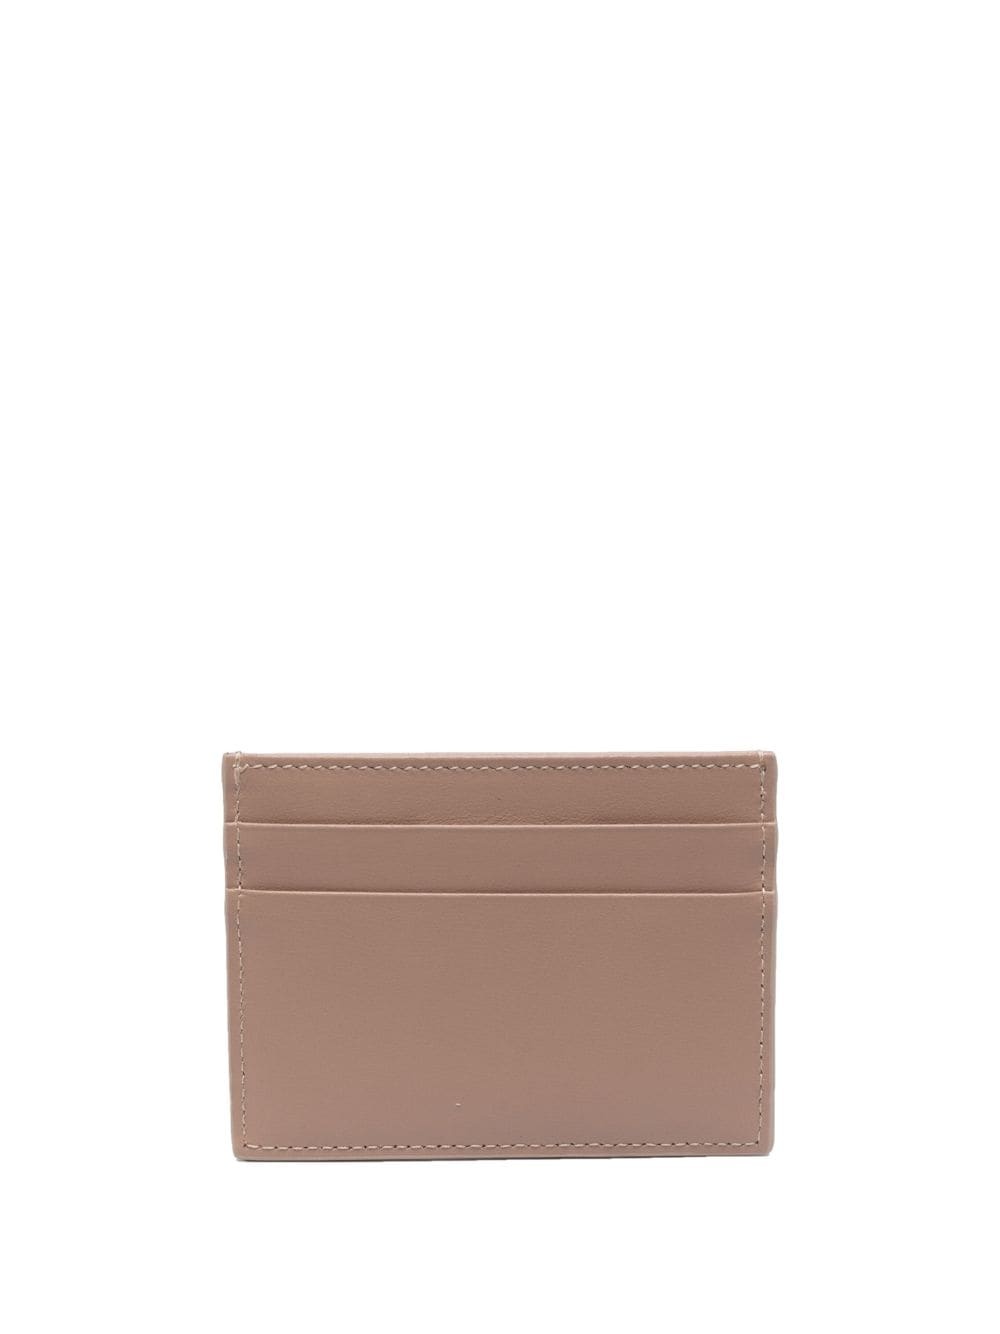 tonal-logo leather cardholder - 2